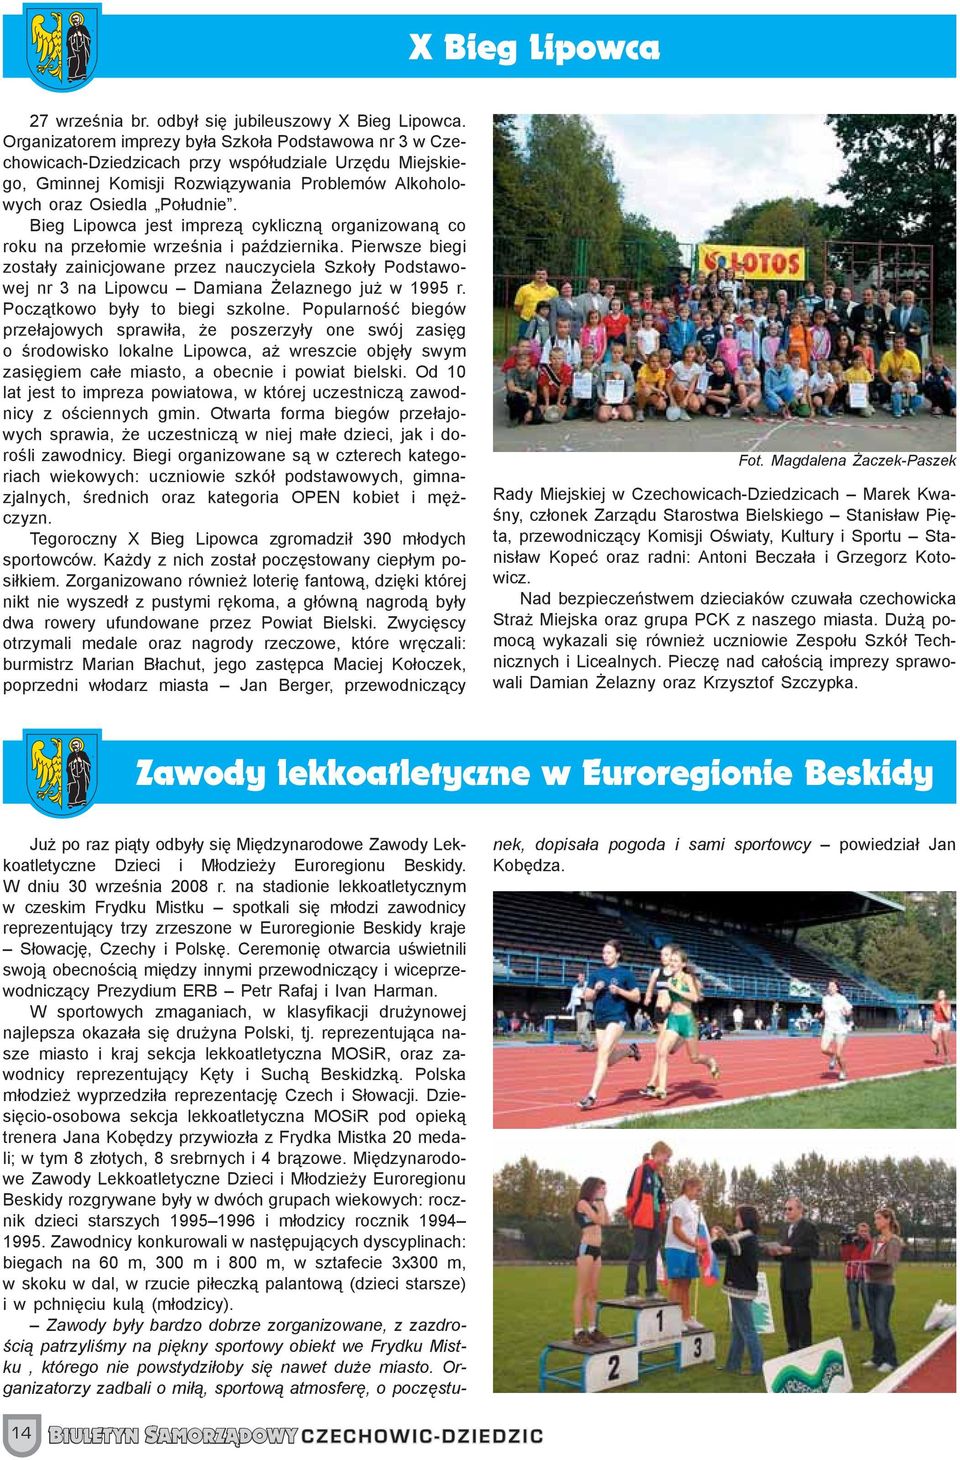 Bieg Lipowca jest imprezą cykliczną organizowaną co roku na przełomie września i października.